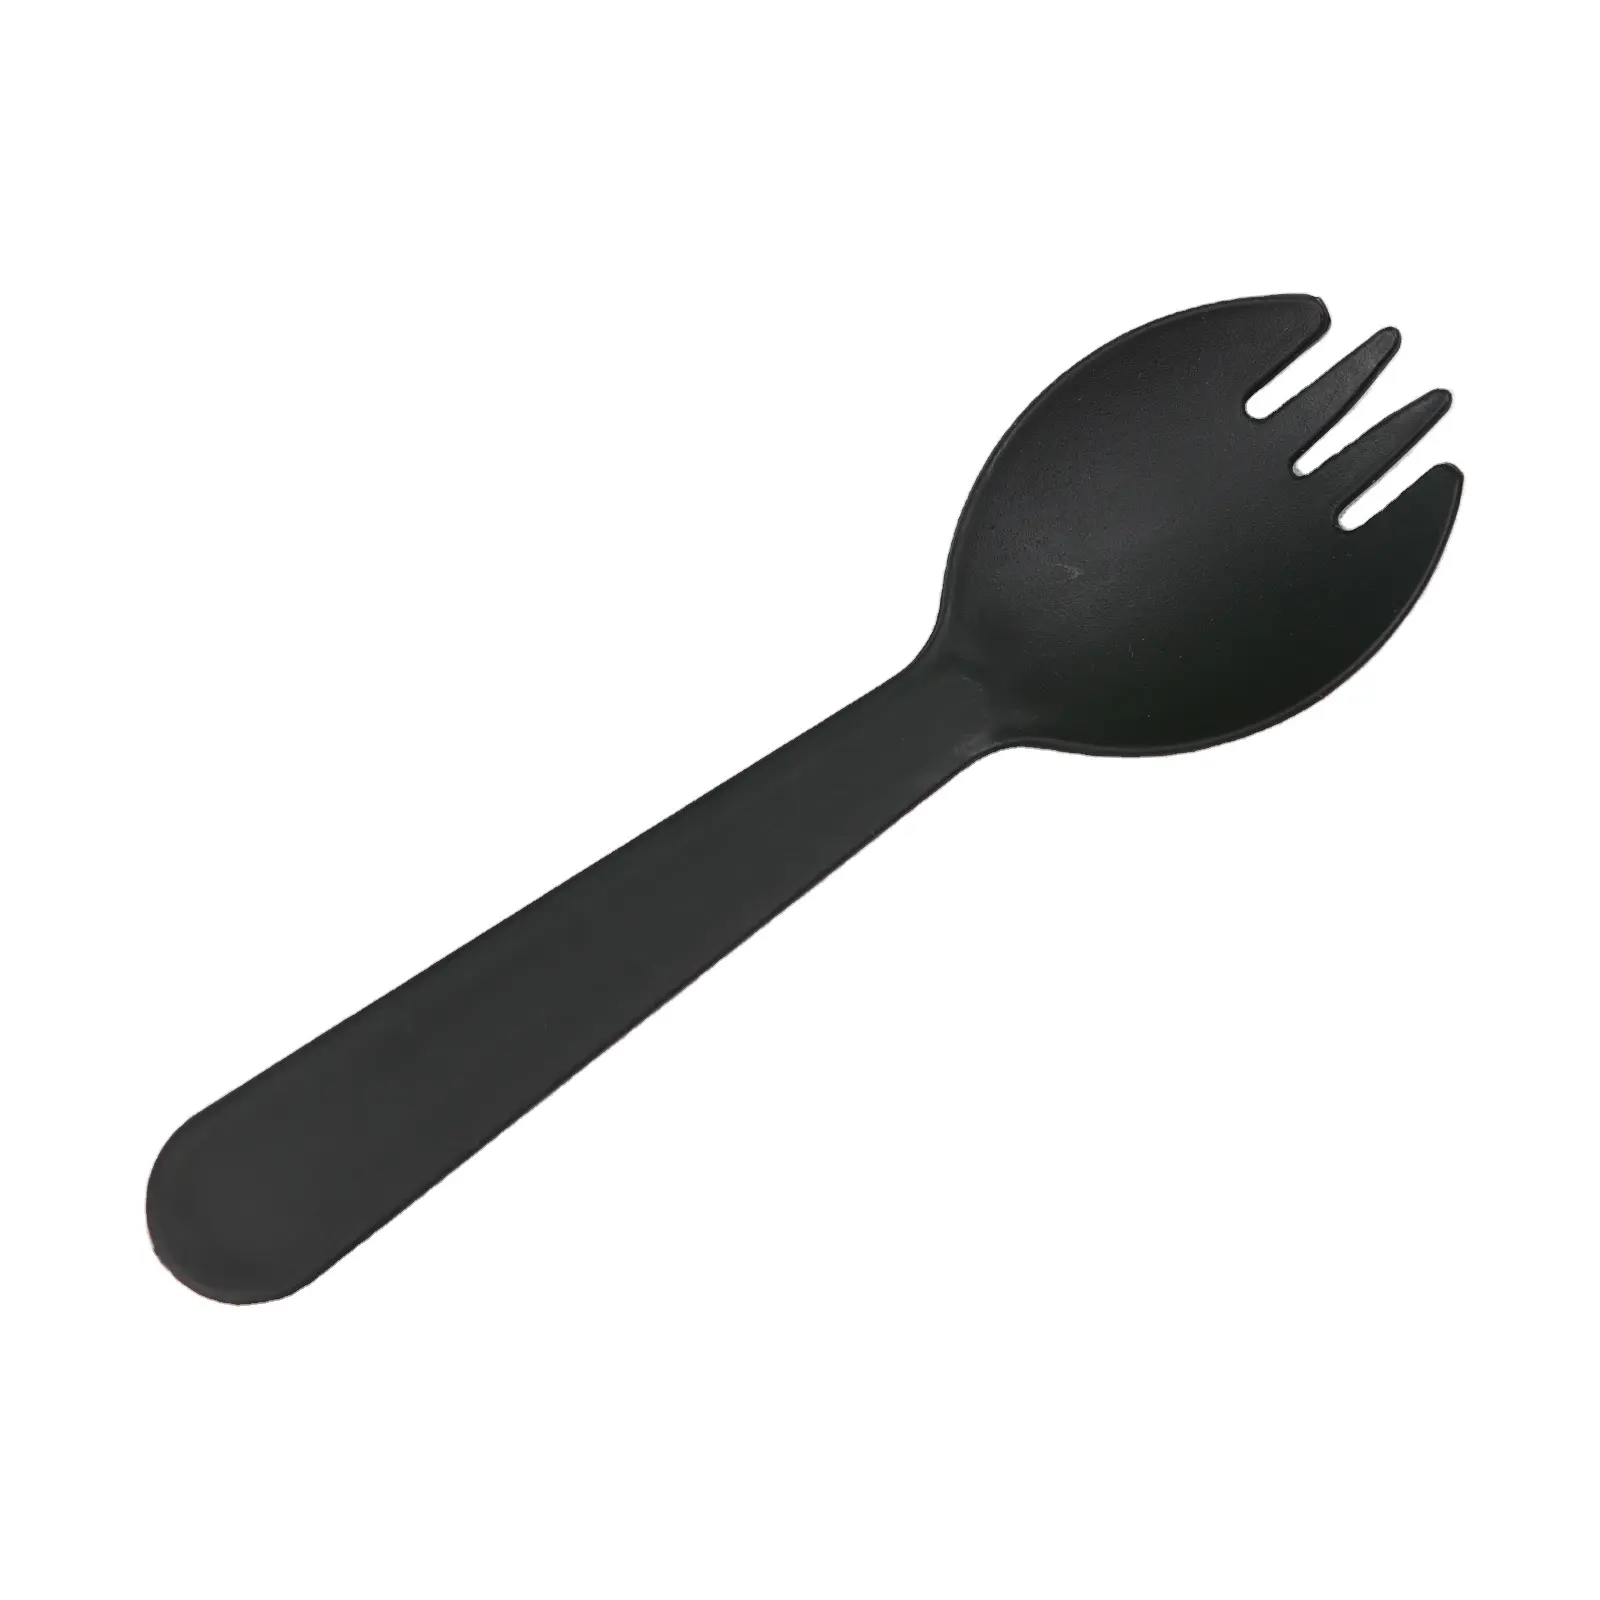 أدوات مائدة صديقة للبيئة عالية الجودة من البلاستيك للمعكة والشوكة والسكين للاستعمال مرة واحدة